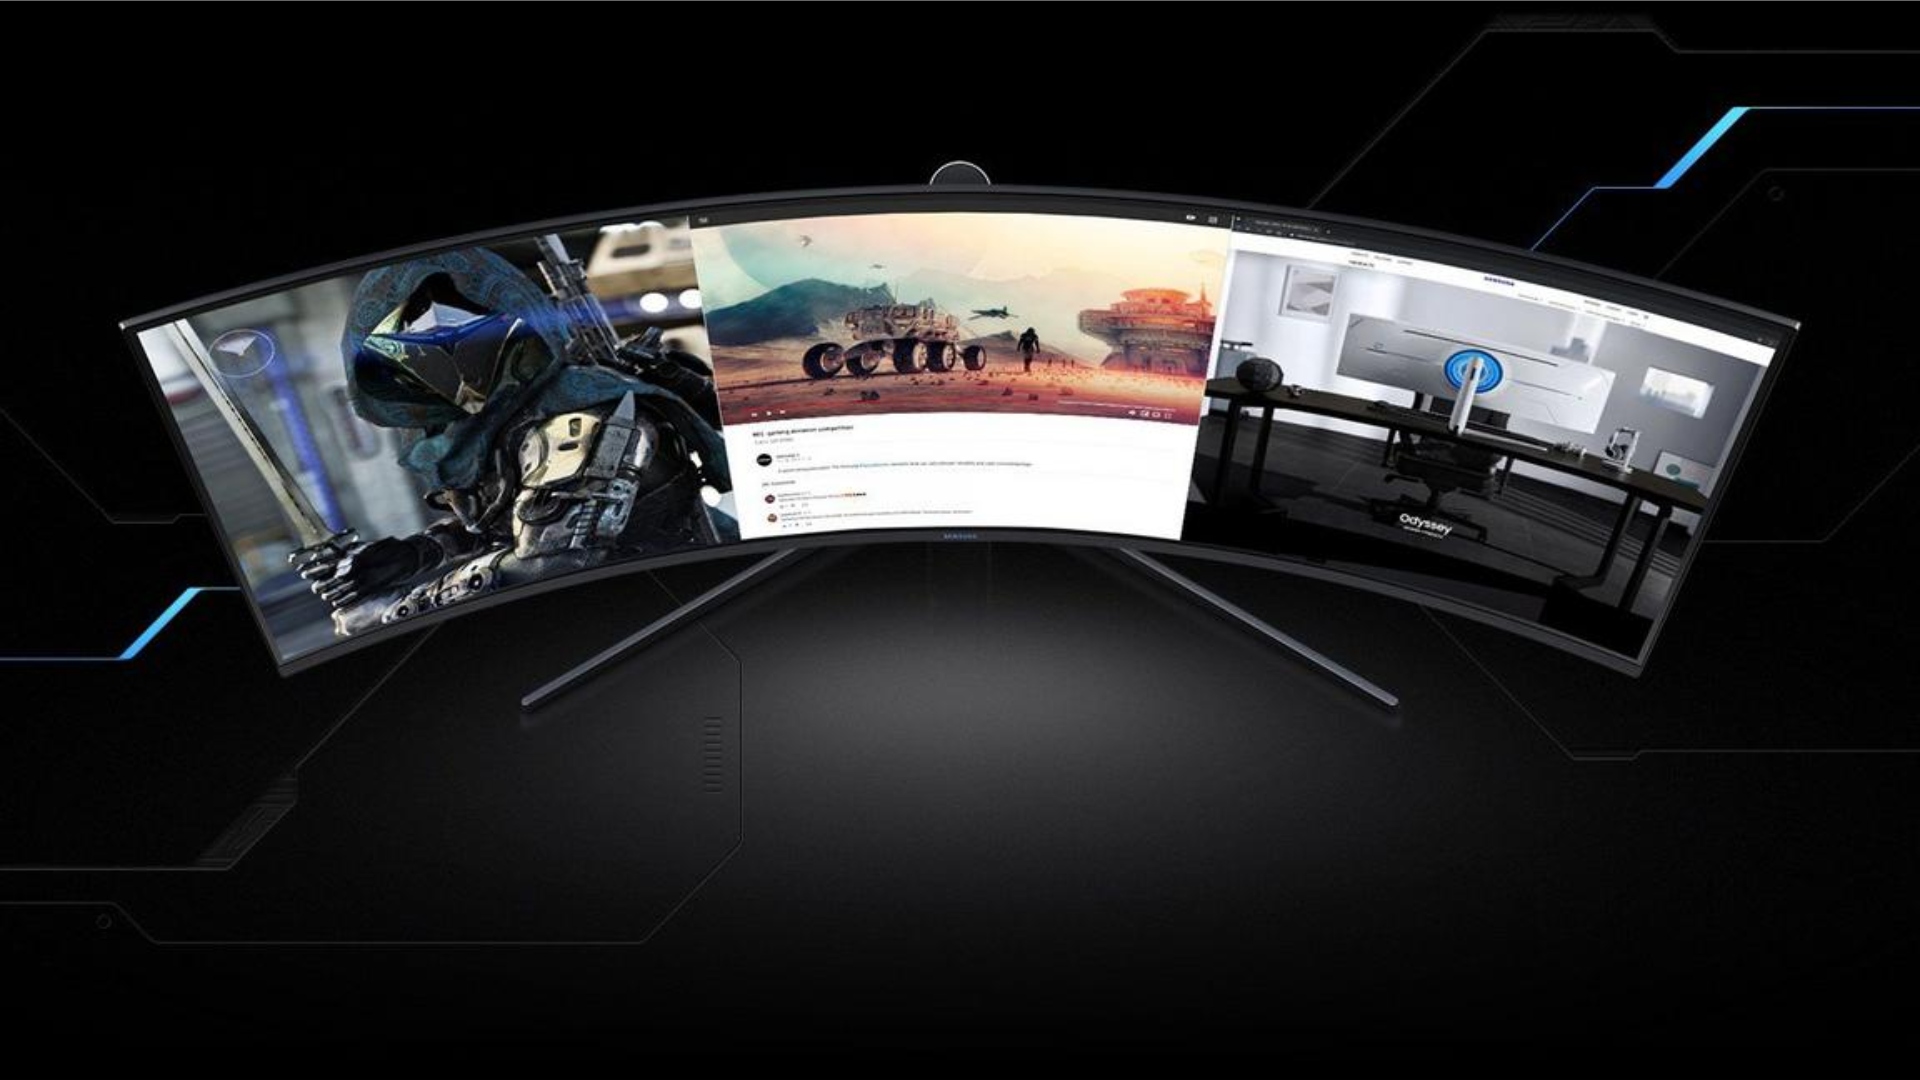 Save $400 on Samsung curved gaming monitors at GameStop